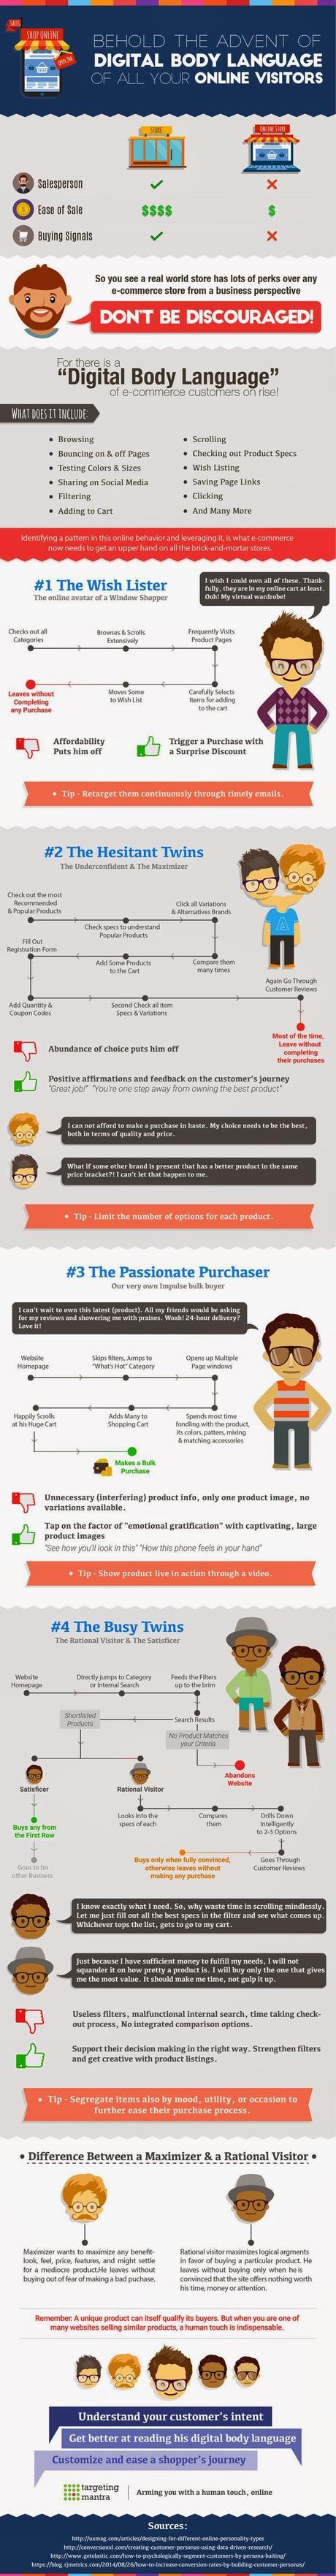 Los 4 tipos de visitantes digitales y cómo convertirlos en compradores #ecommerce